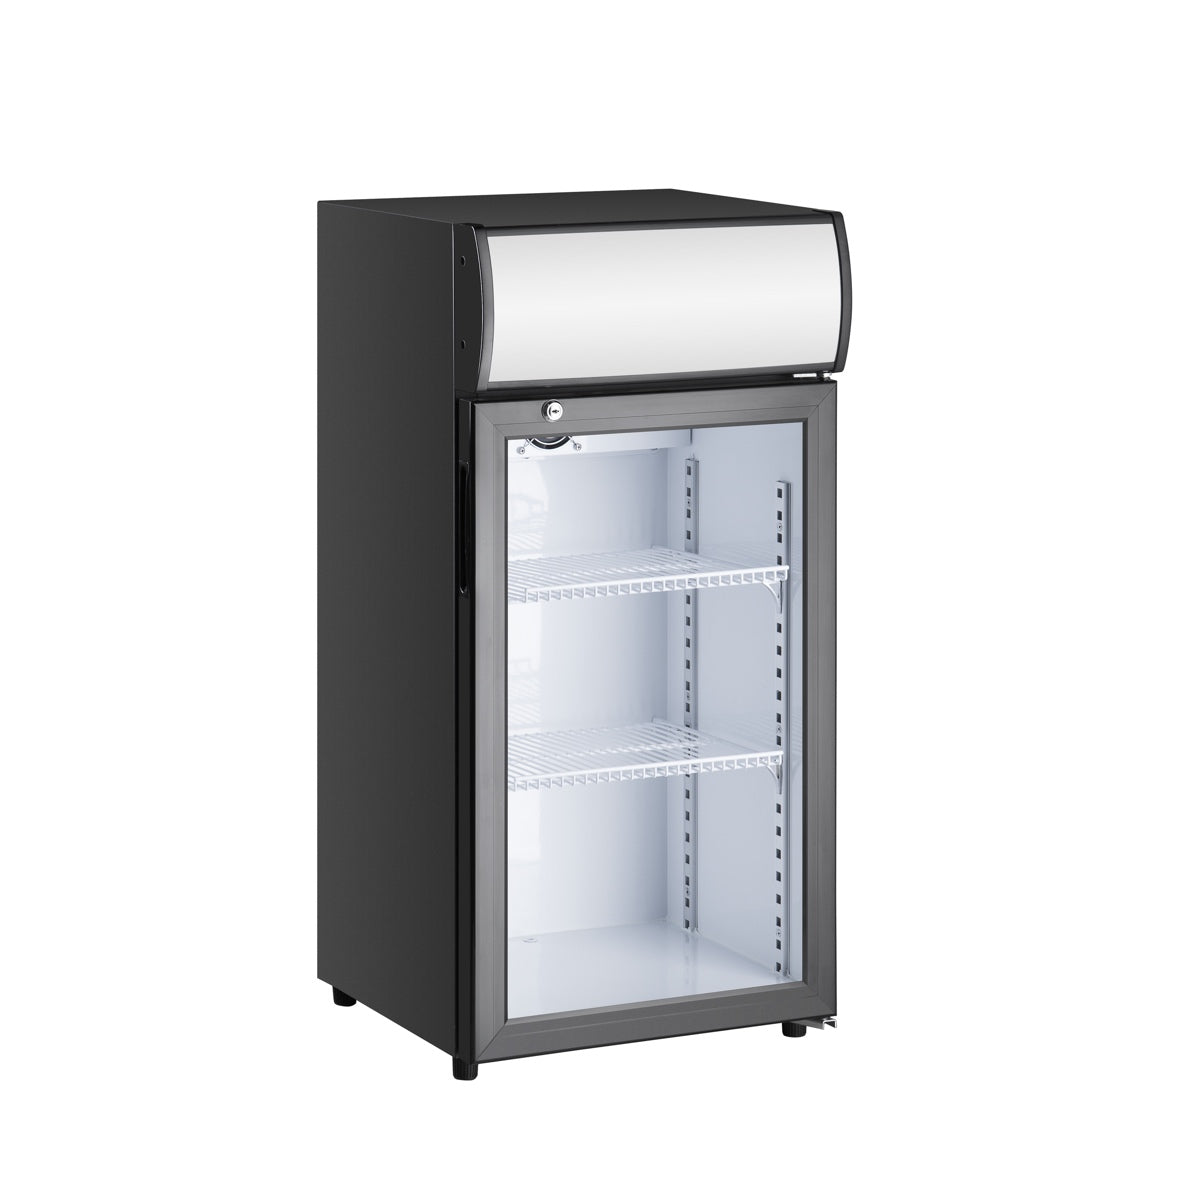 Kingsbottle Display Beverage Cooler Commercial Refrigerator G80-Wine Coolers-The Wine Cooler Club